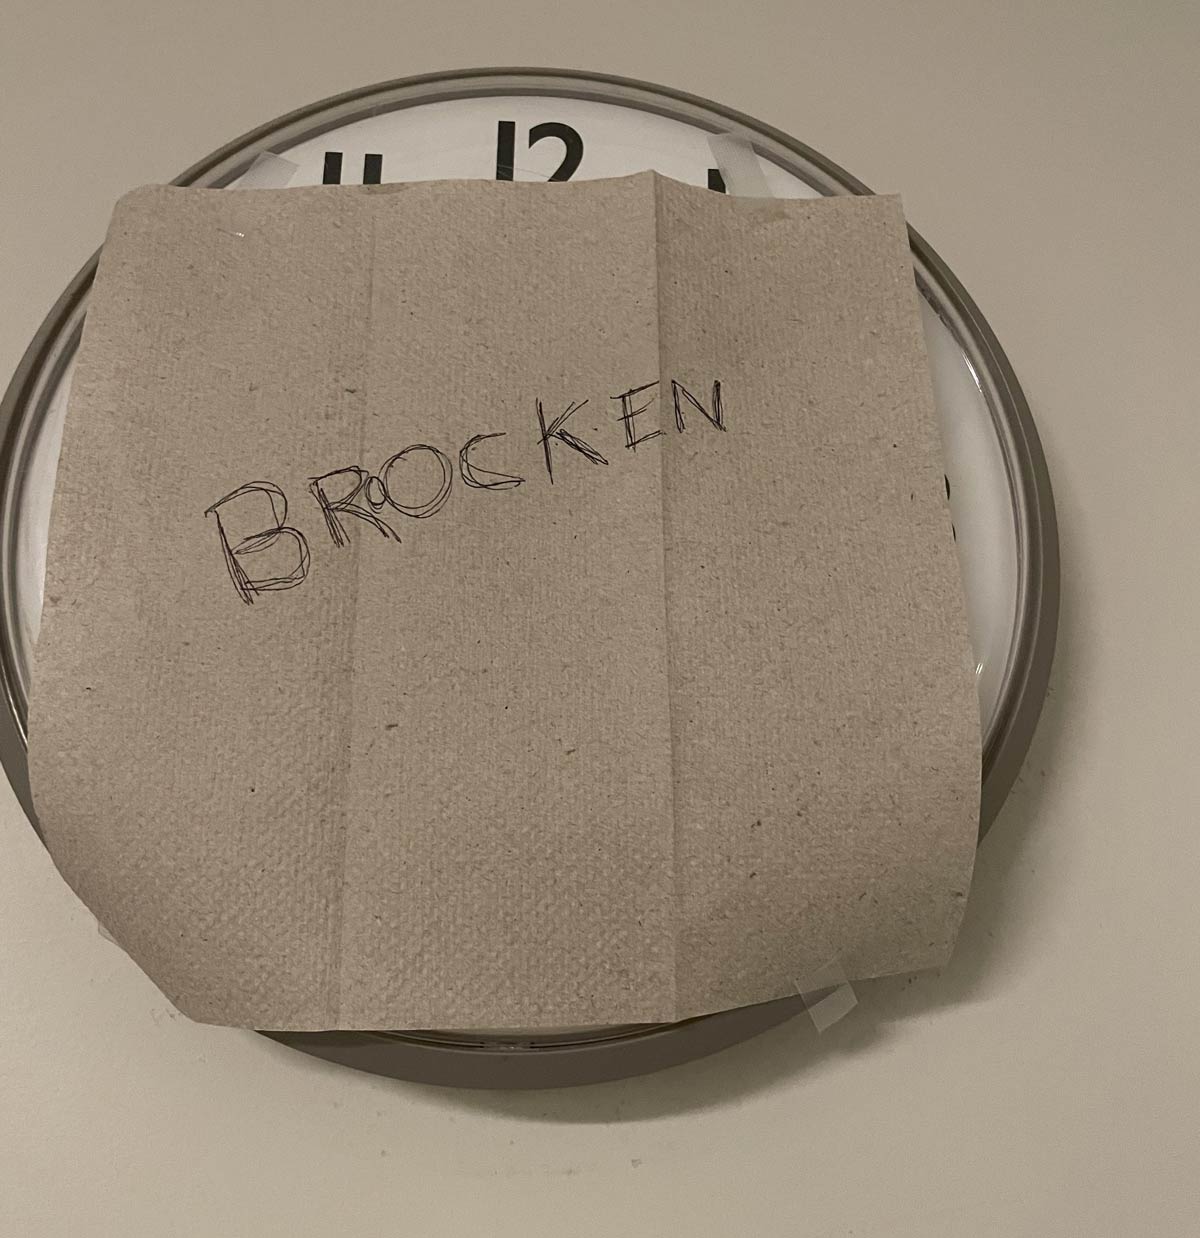 Even a brocken clock is right twace a der